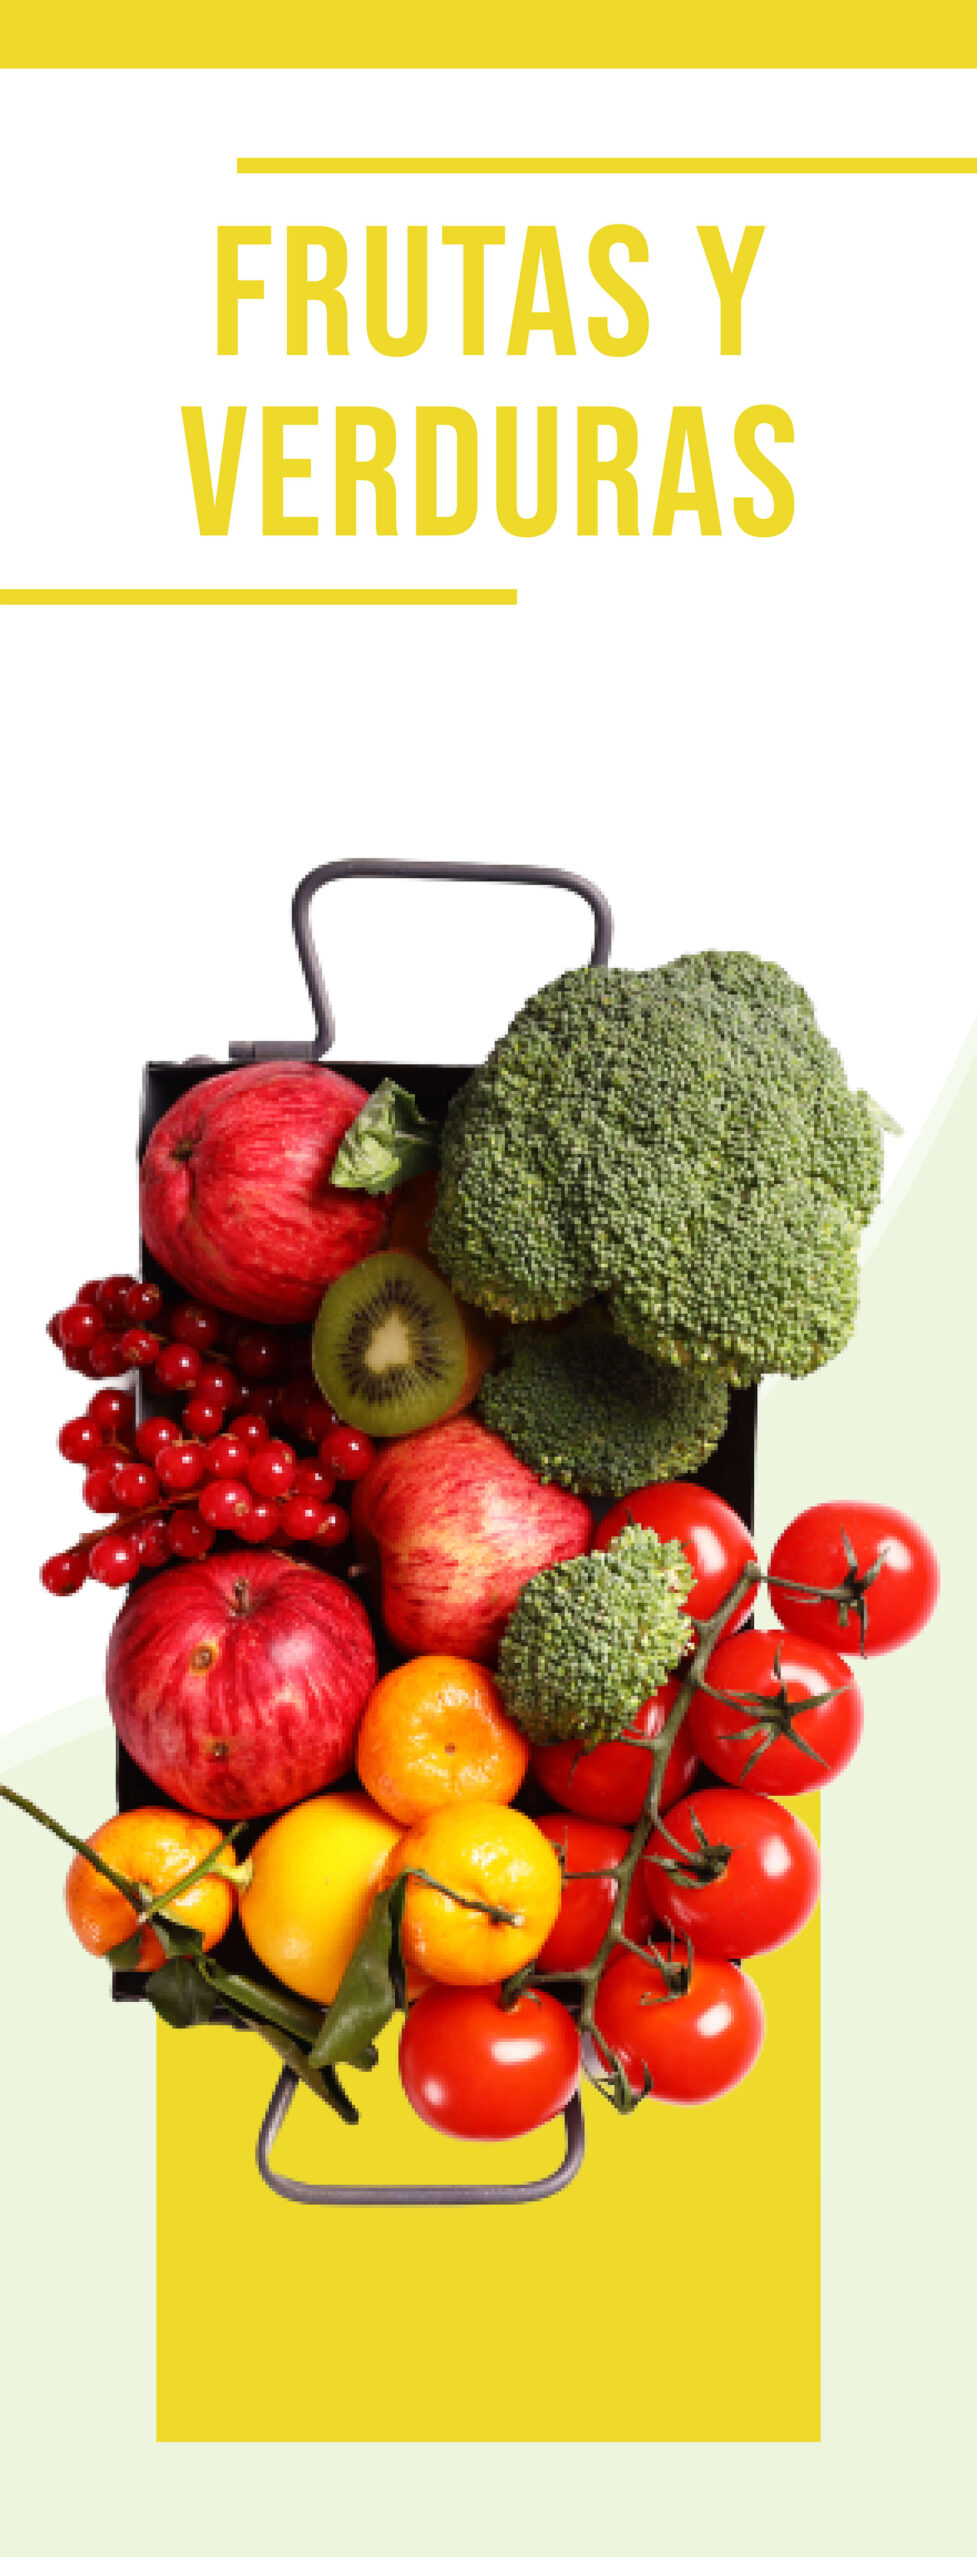 frutas verduras supermercados eltit